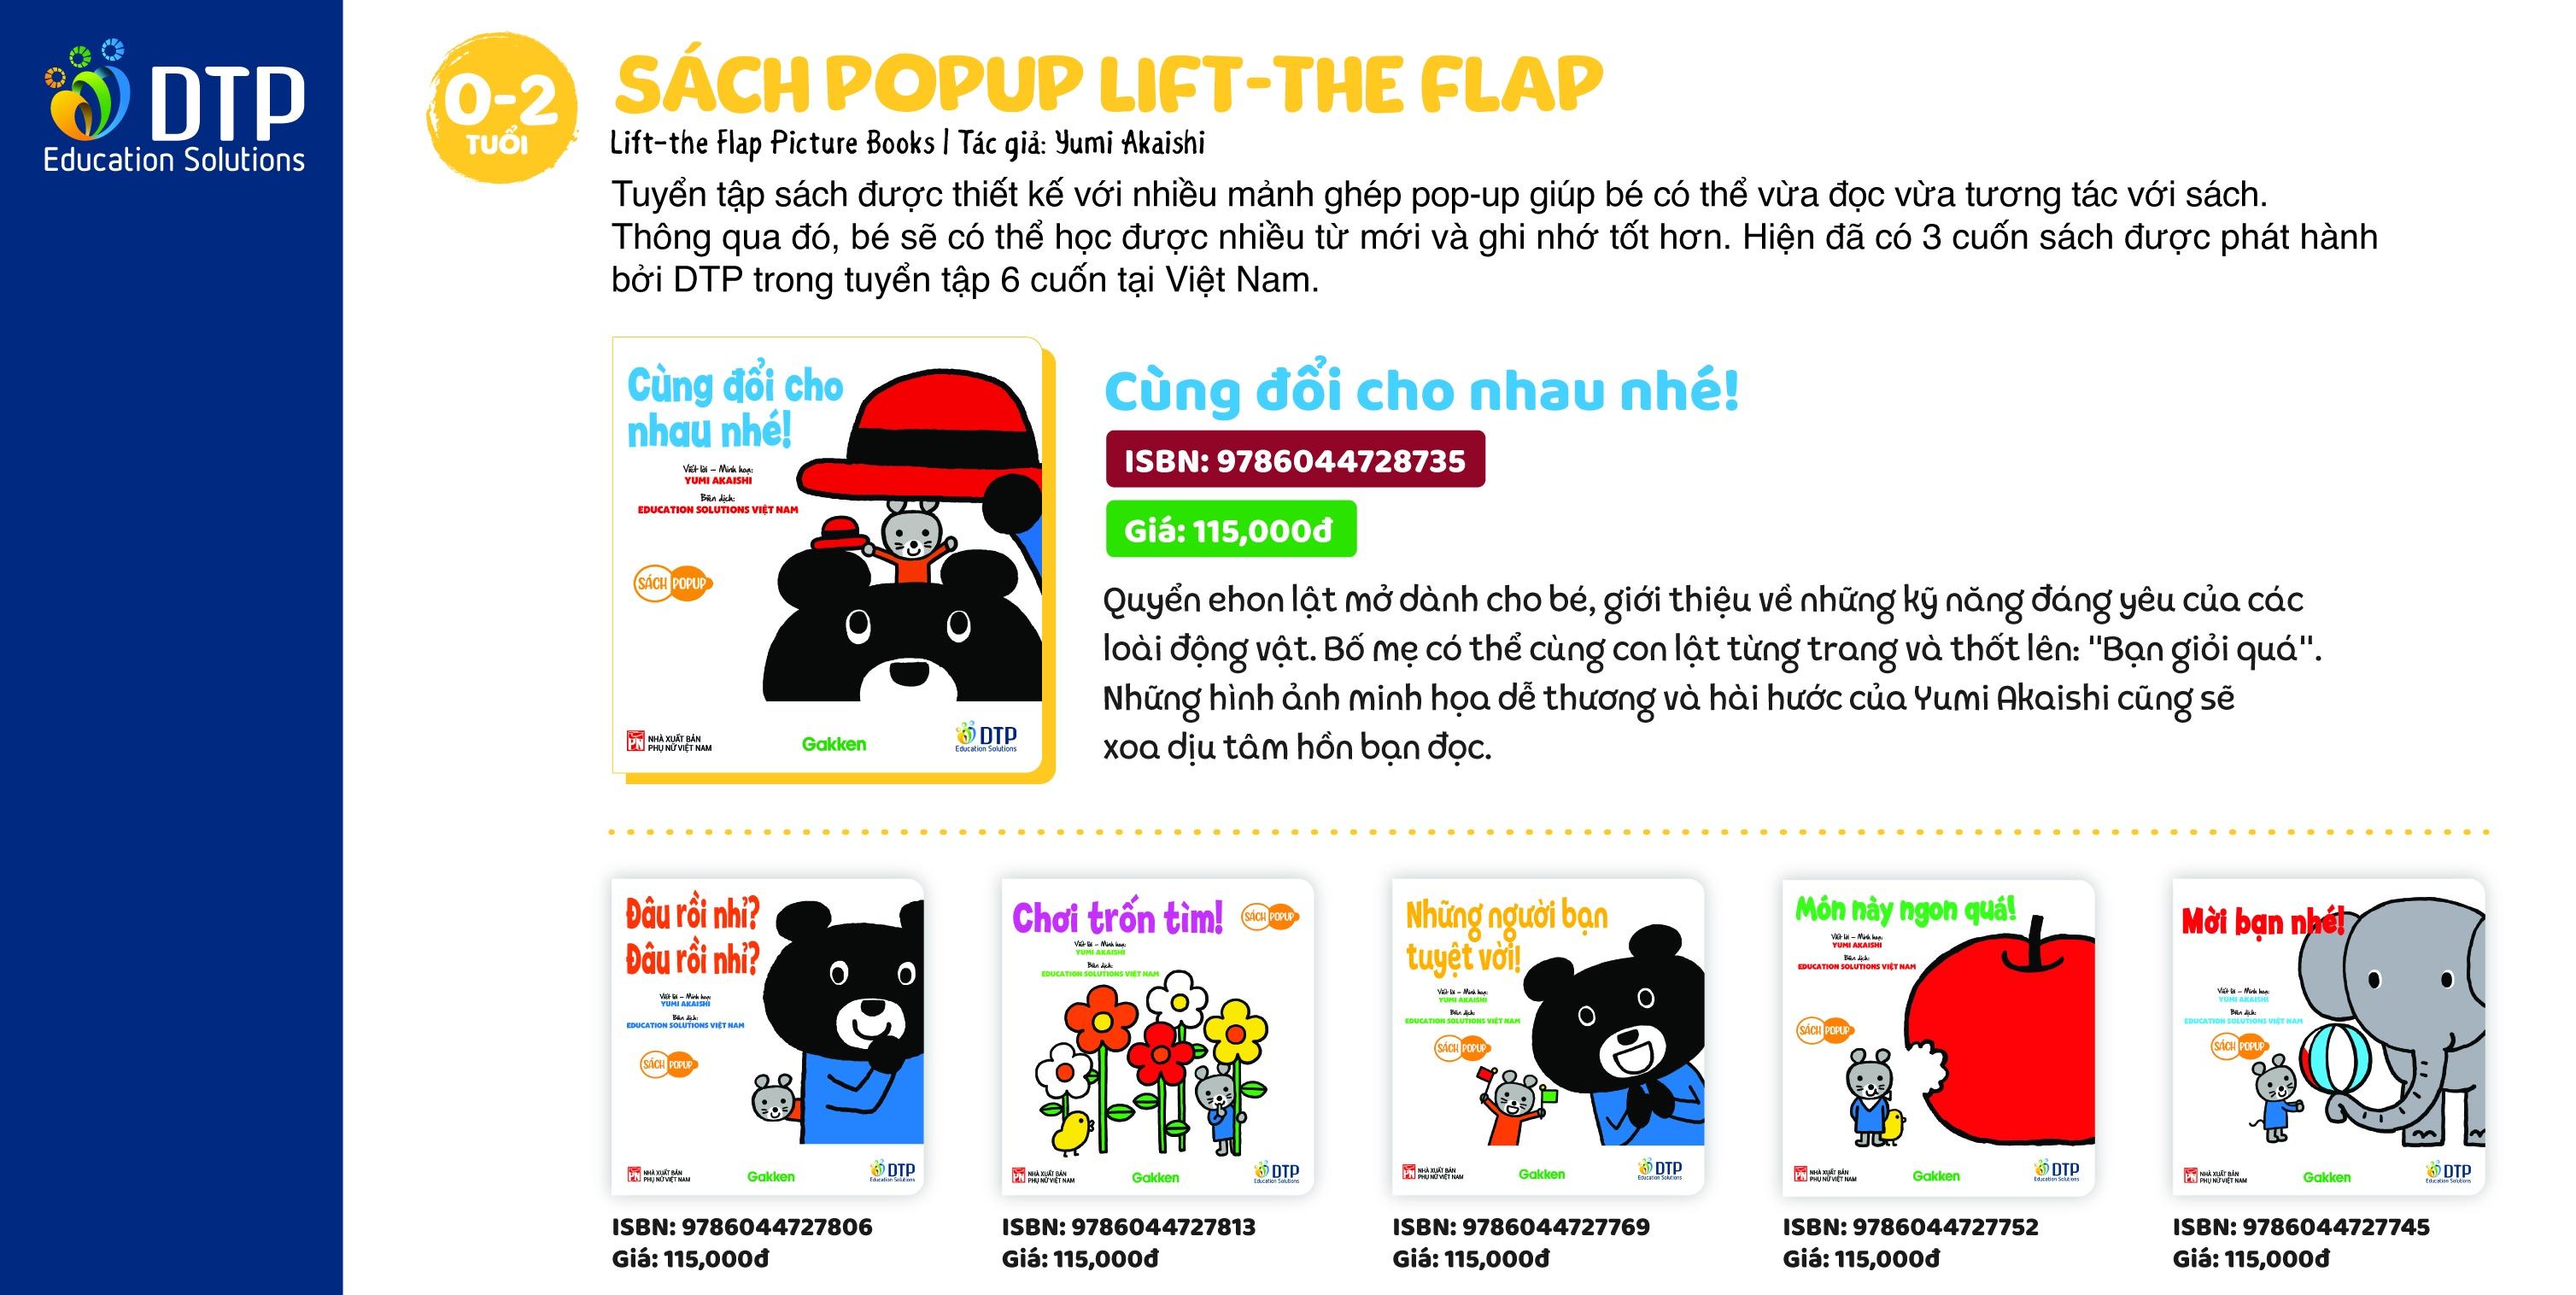 Lift-the Flap Sách Pop-up